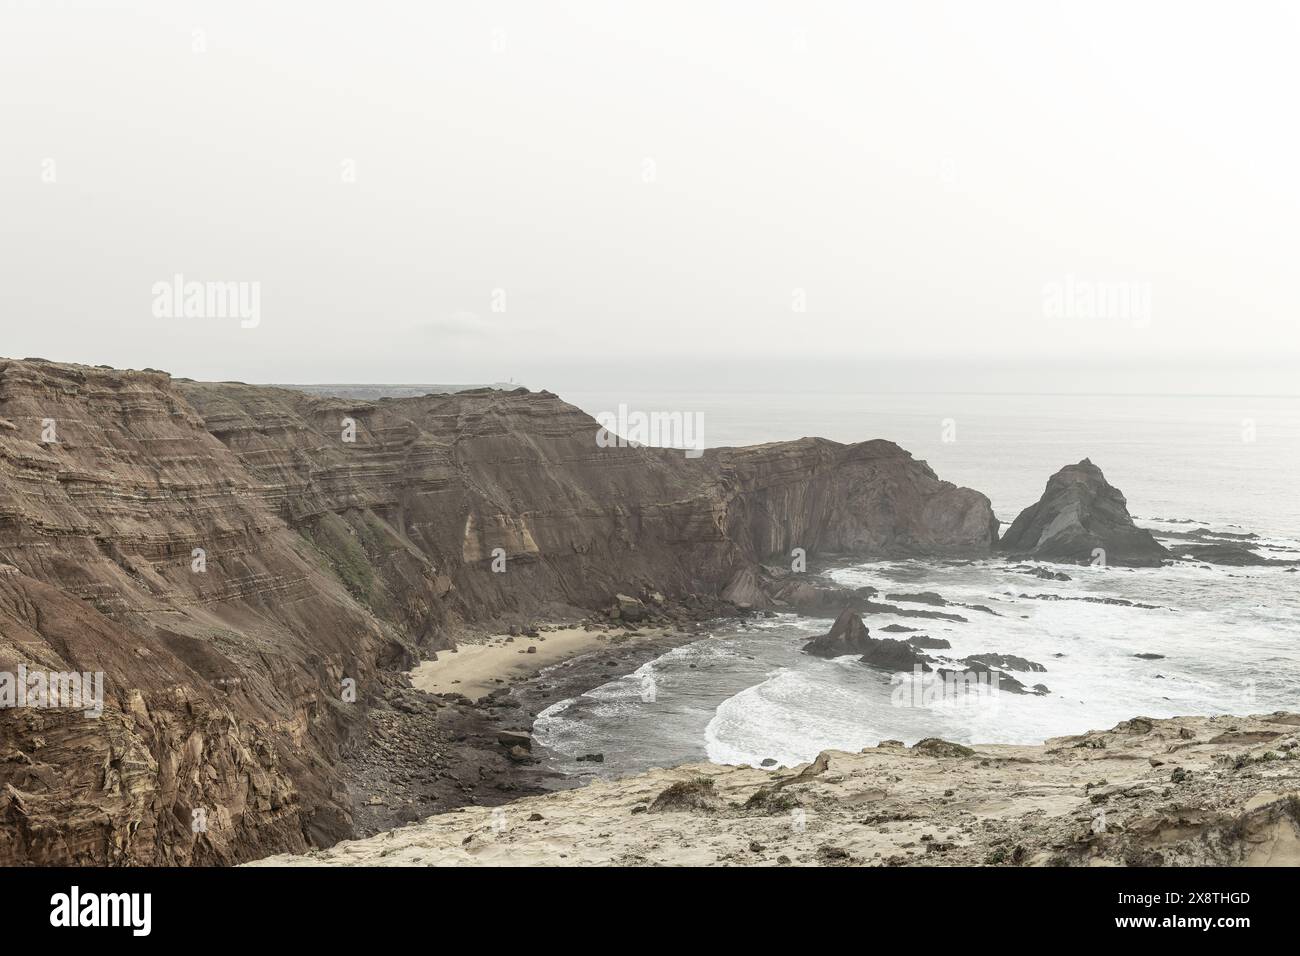 Eine dramatische Küstenlandschaft mit zerklüfteten Klippen und einer felsigen Küste in Cabo San Vicente, Portugal. Stockfoto